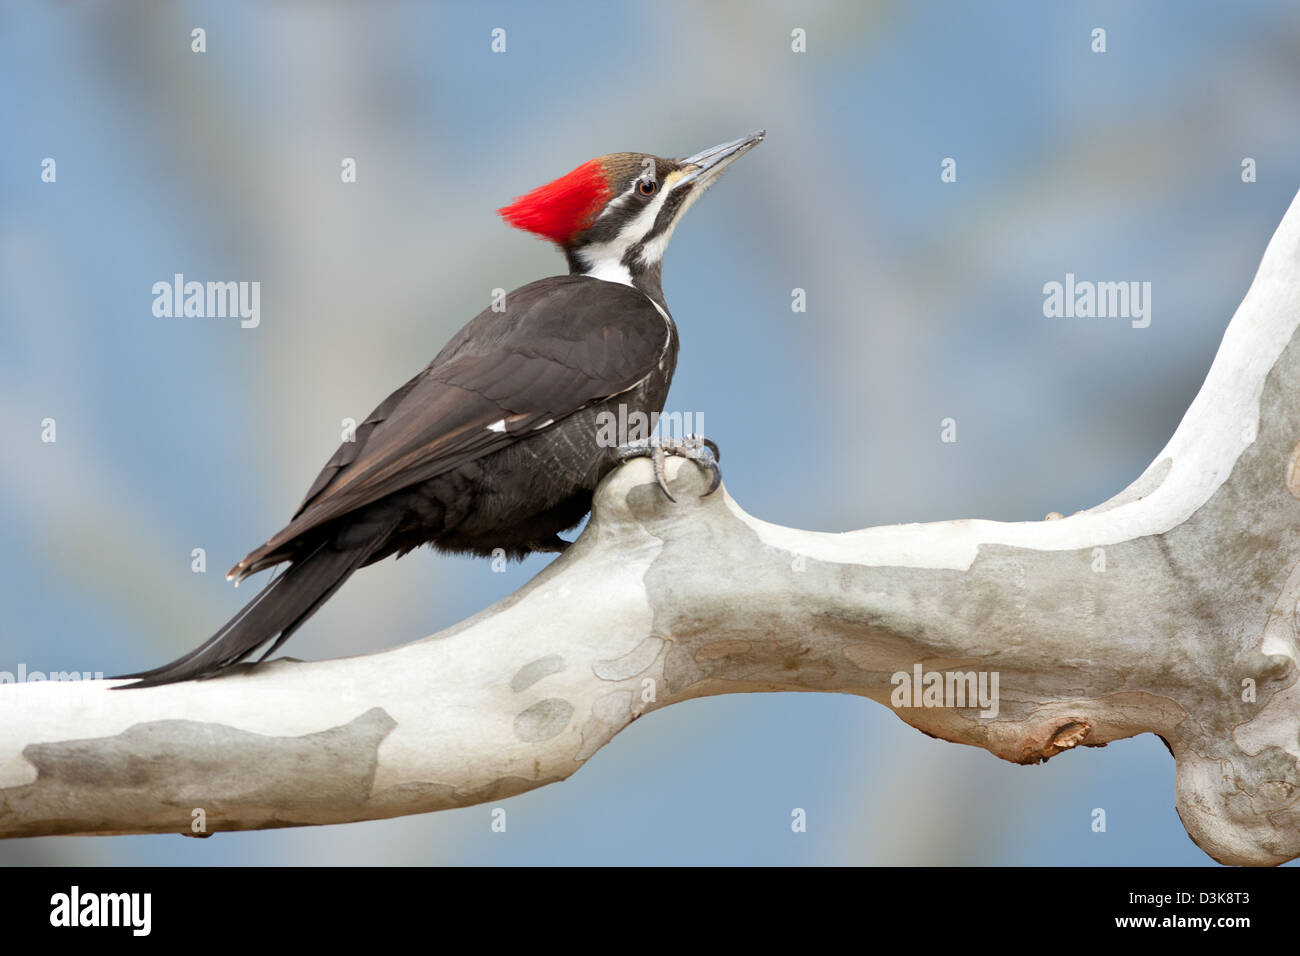 Pic femelle à pénombre sur Sycamore arbre oiseaux oiseaux pic Ornithology Science nature faune Environnement Banque D'Images